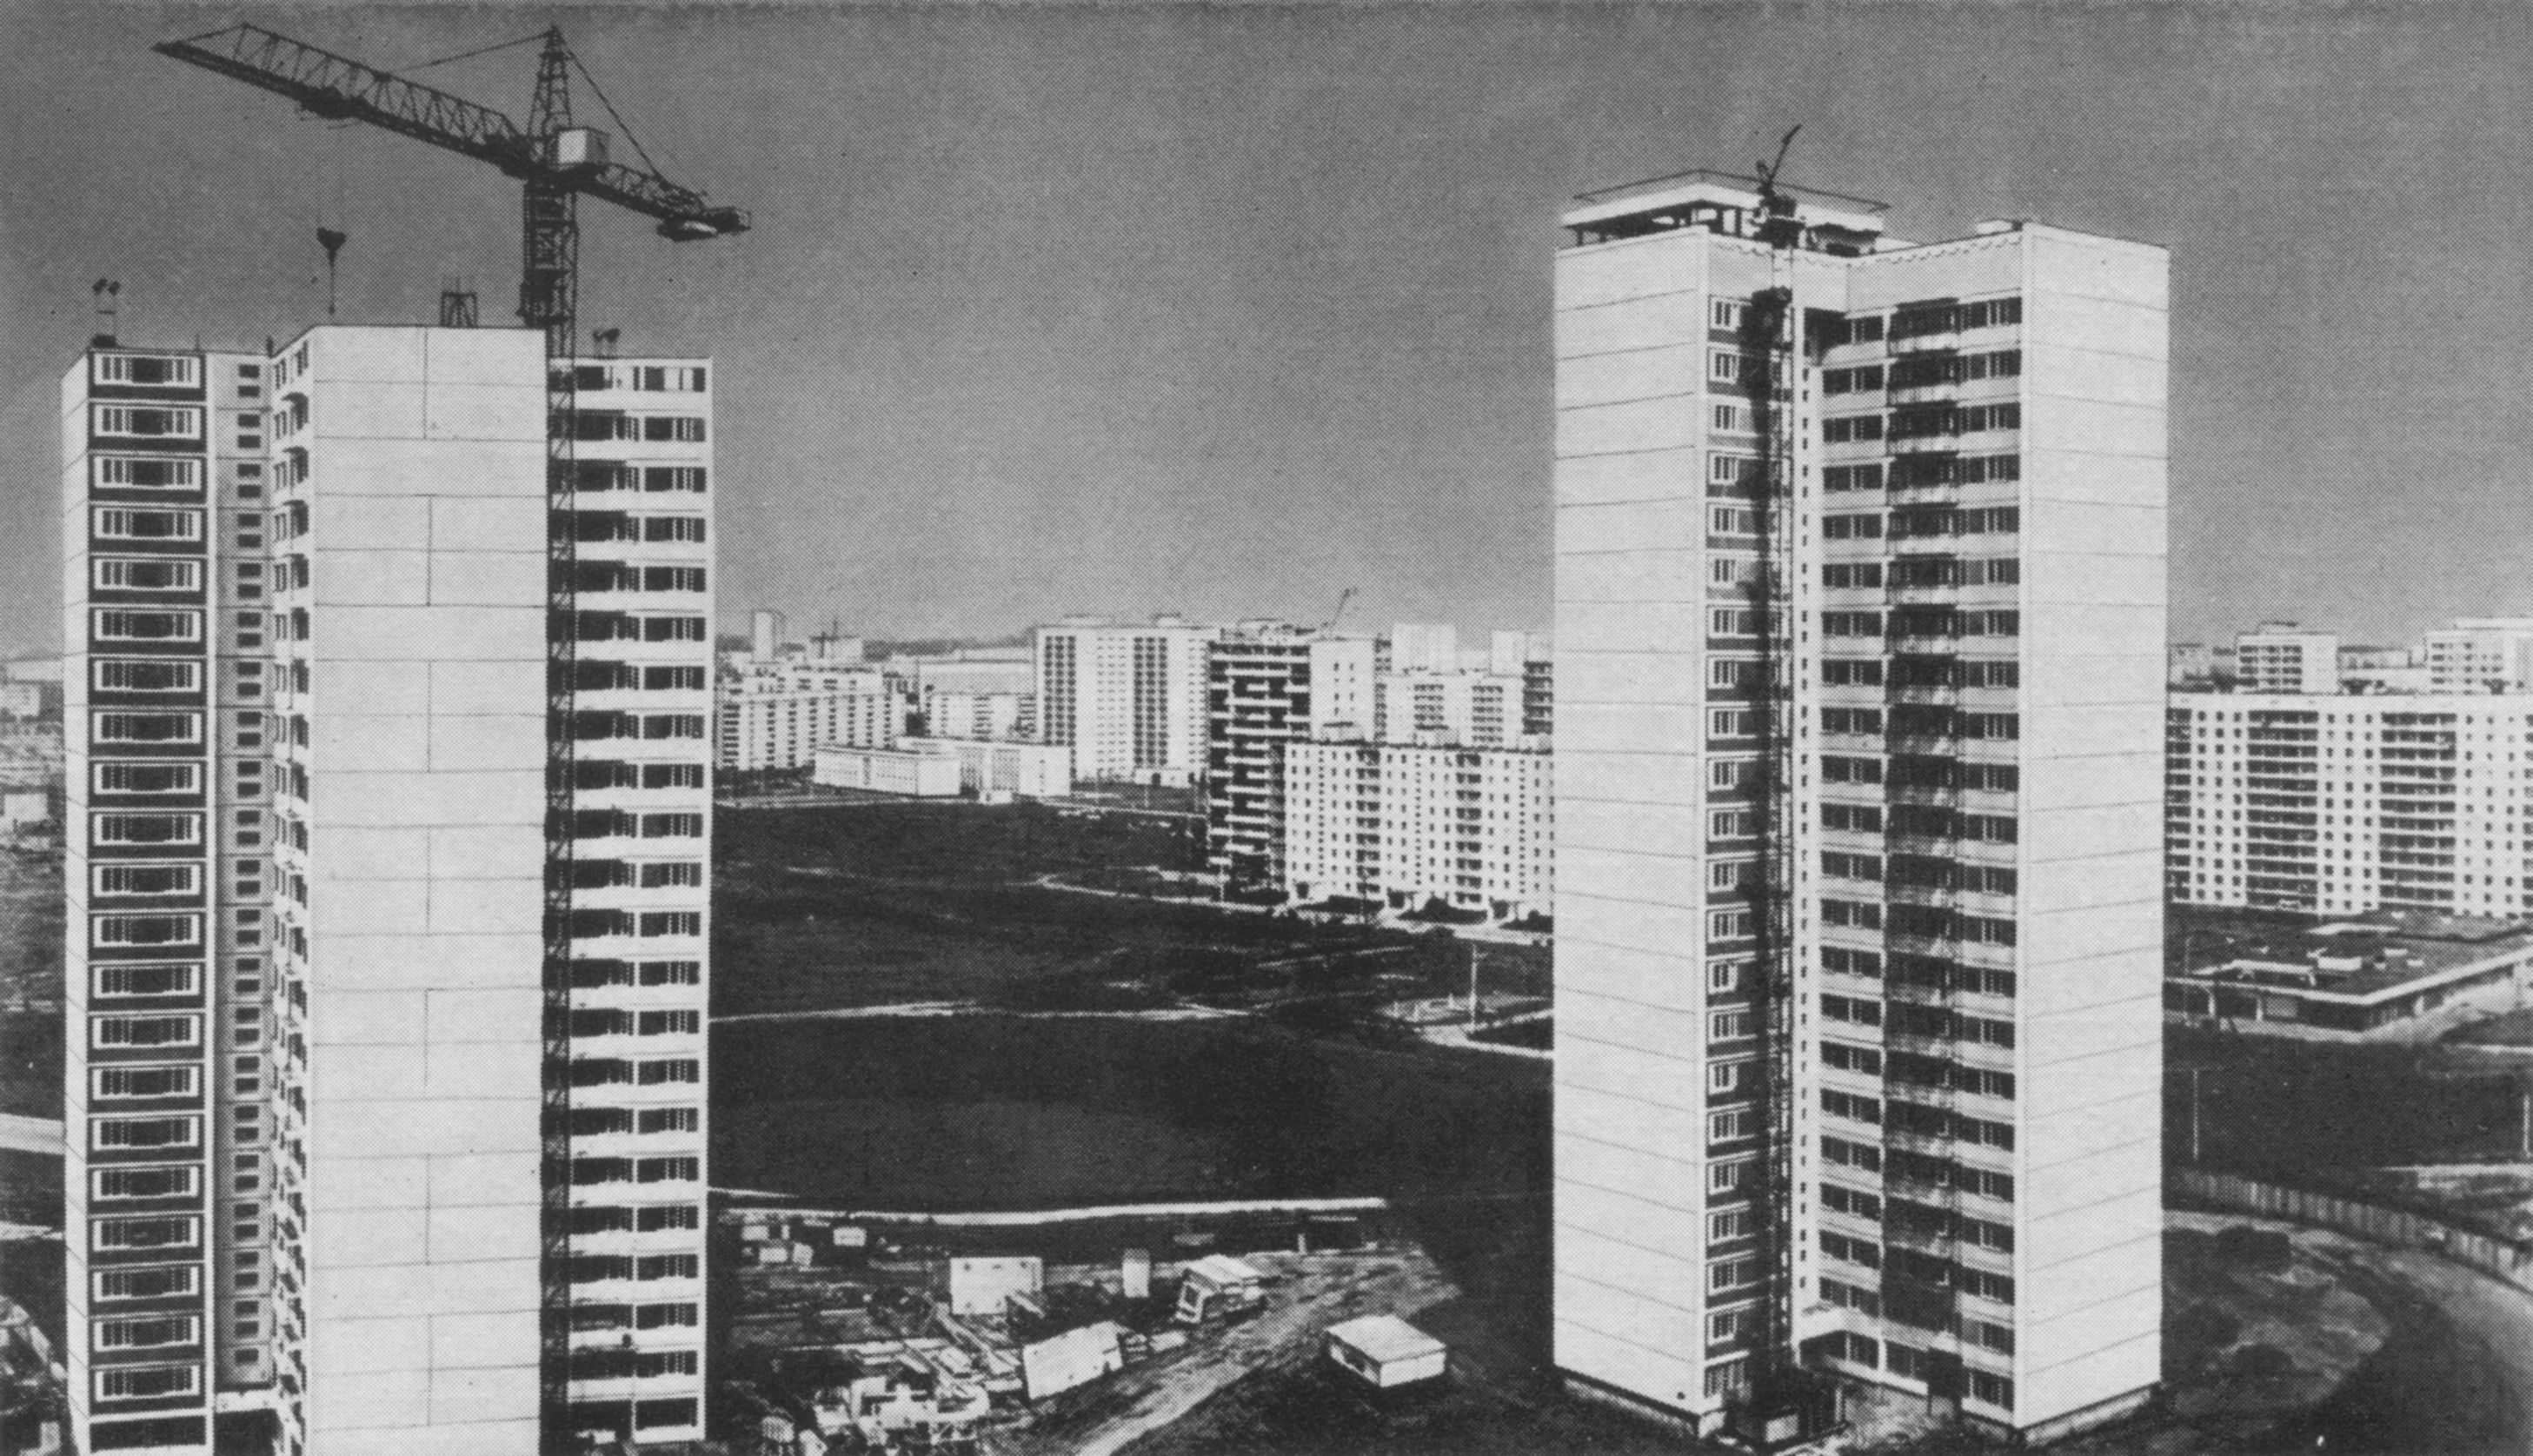 Тропарево. Строительство 22-этажных экспериментальных крупнопанельных домов с крестообразным планом на основе изделий по единому каталогу